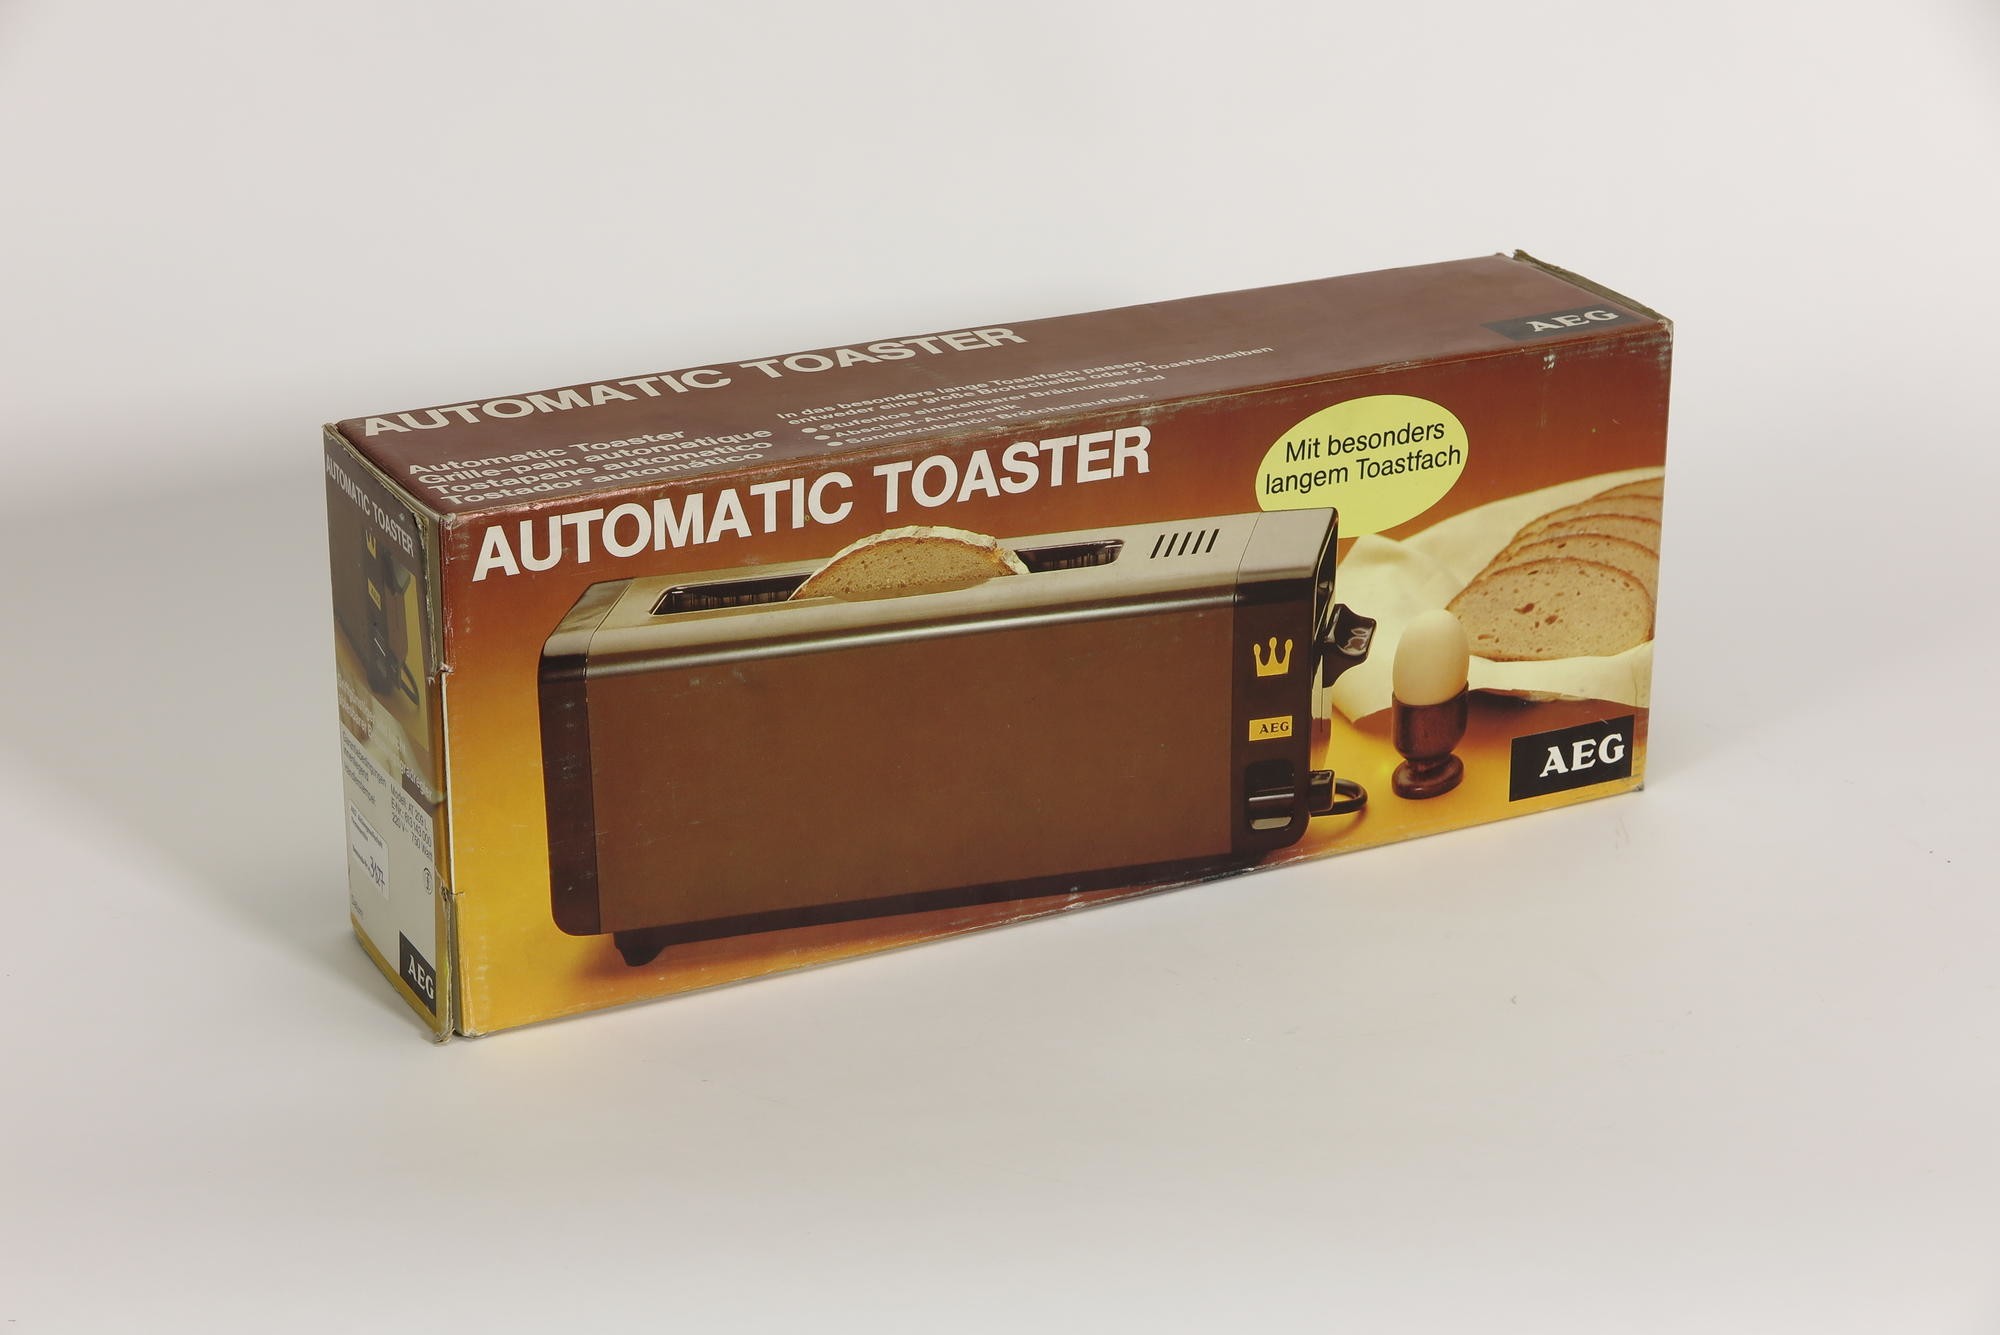 Verpackungskarton, Zubehör zu Automatischer Toaster Typ E WK 0026 Modell AT 209L 'automatic toaster` (Stiftung Deutsches Technikmuseum Berlin CC0)